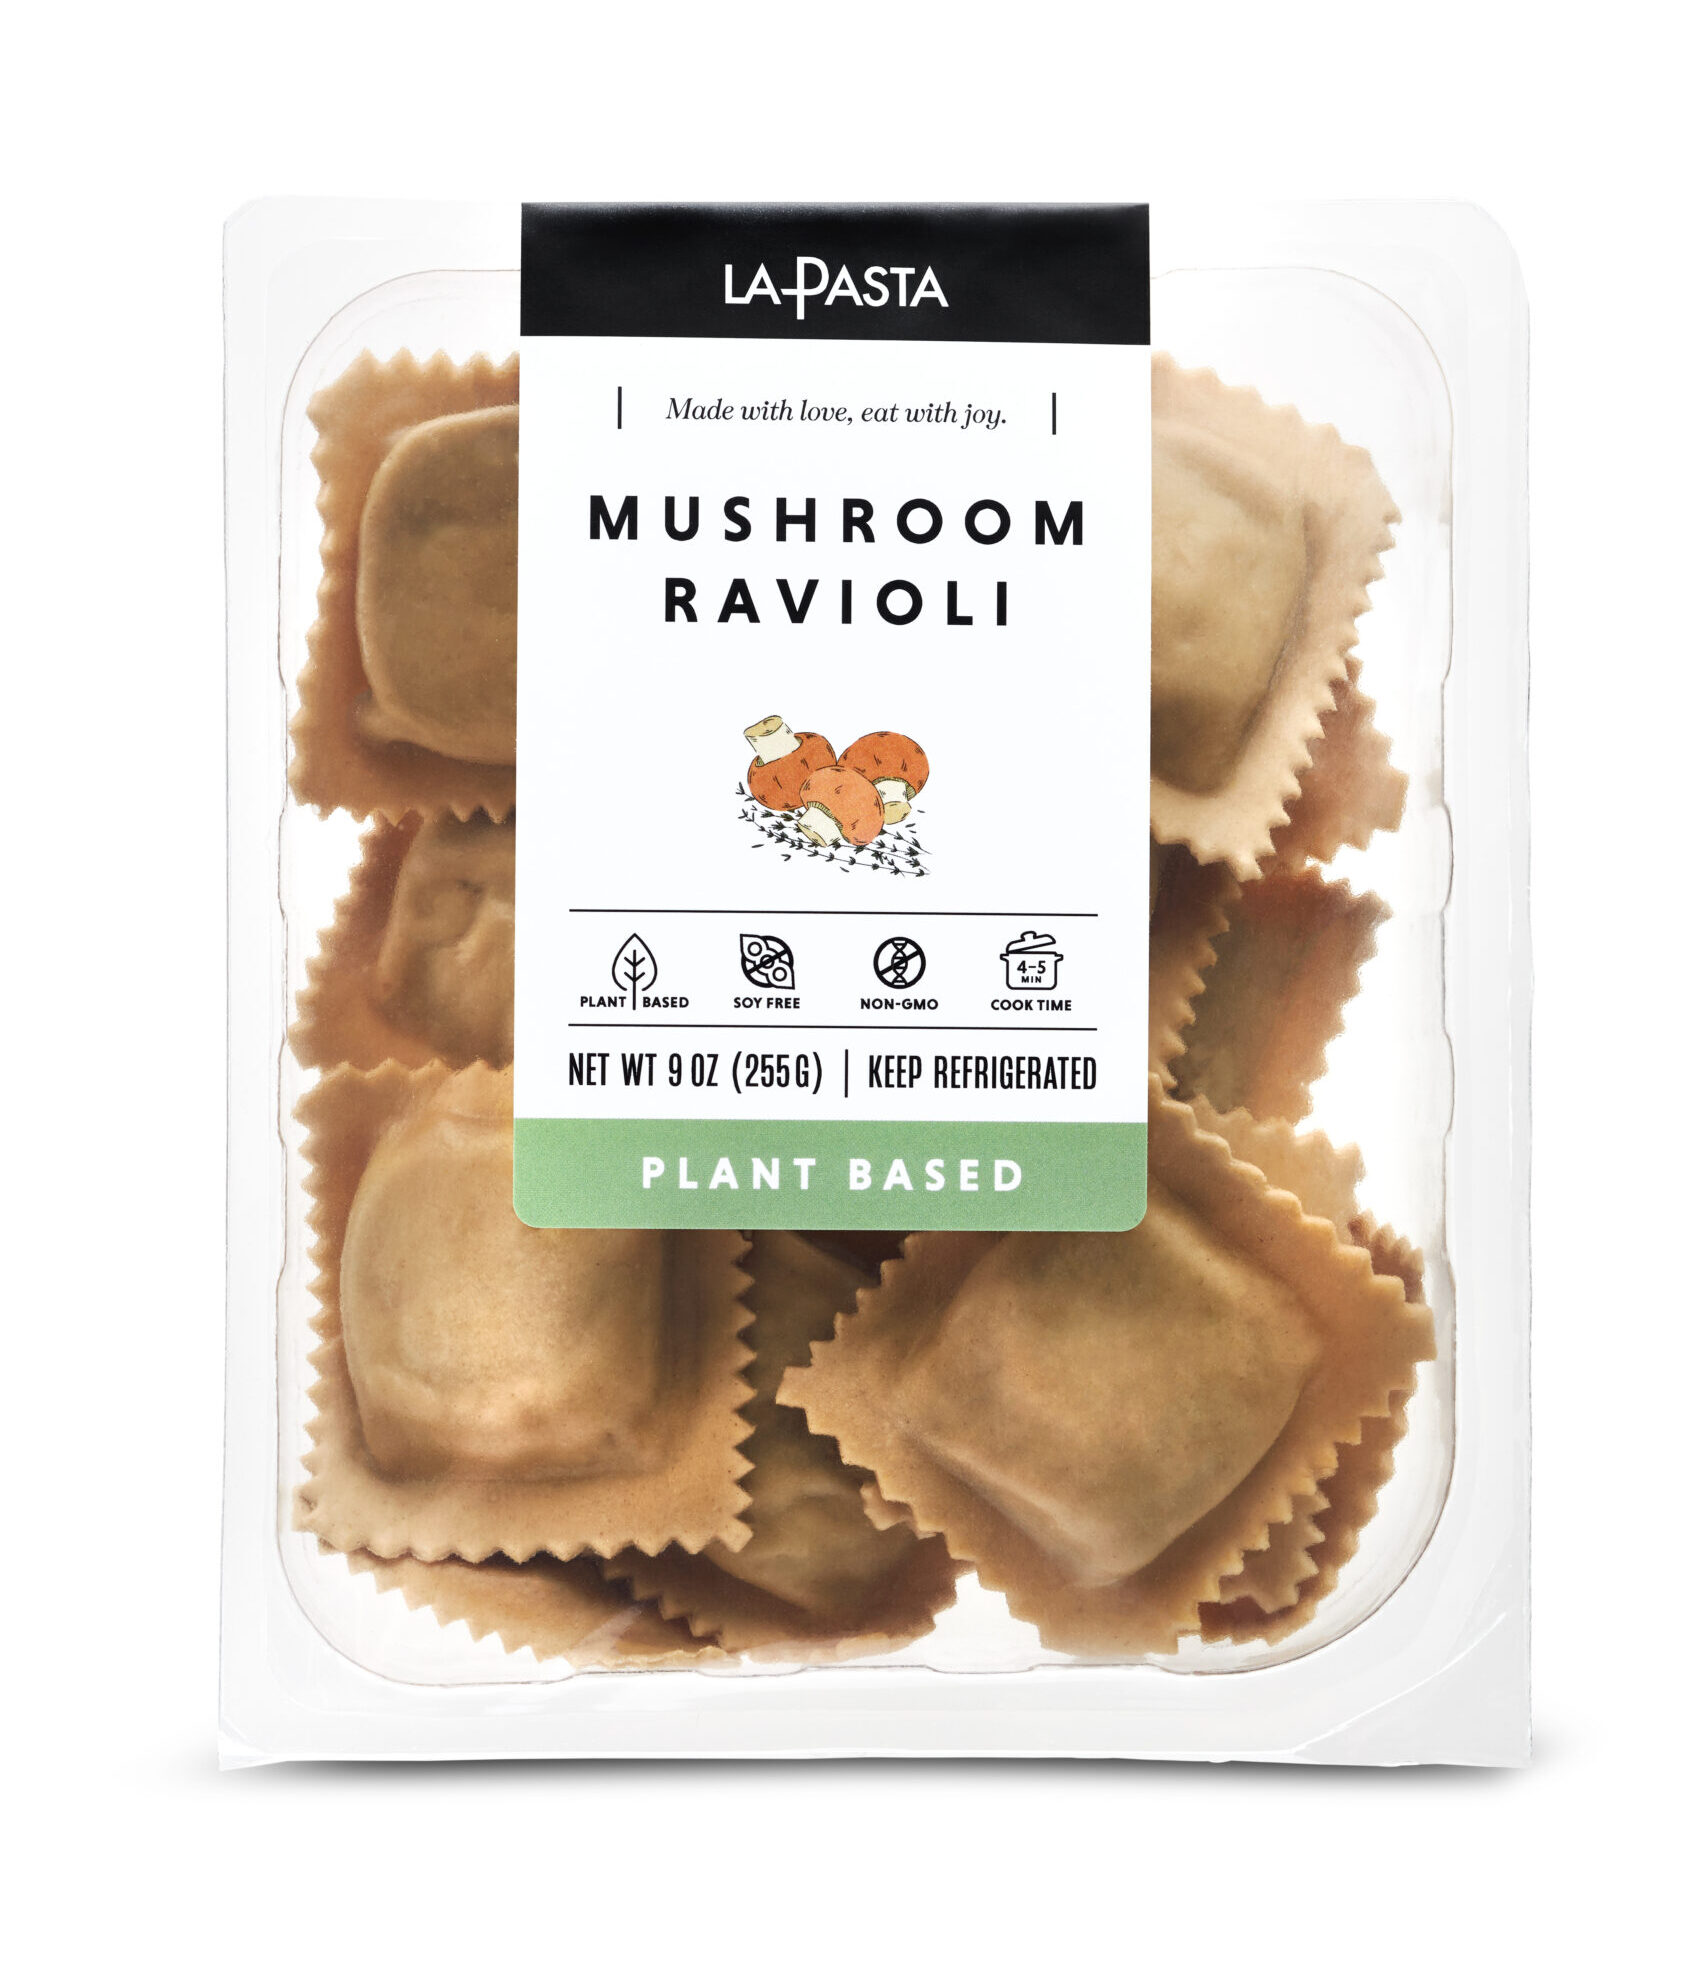 A package of mushroom ravioli is shown.